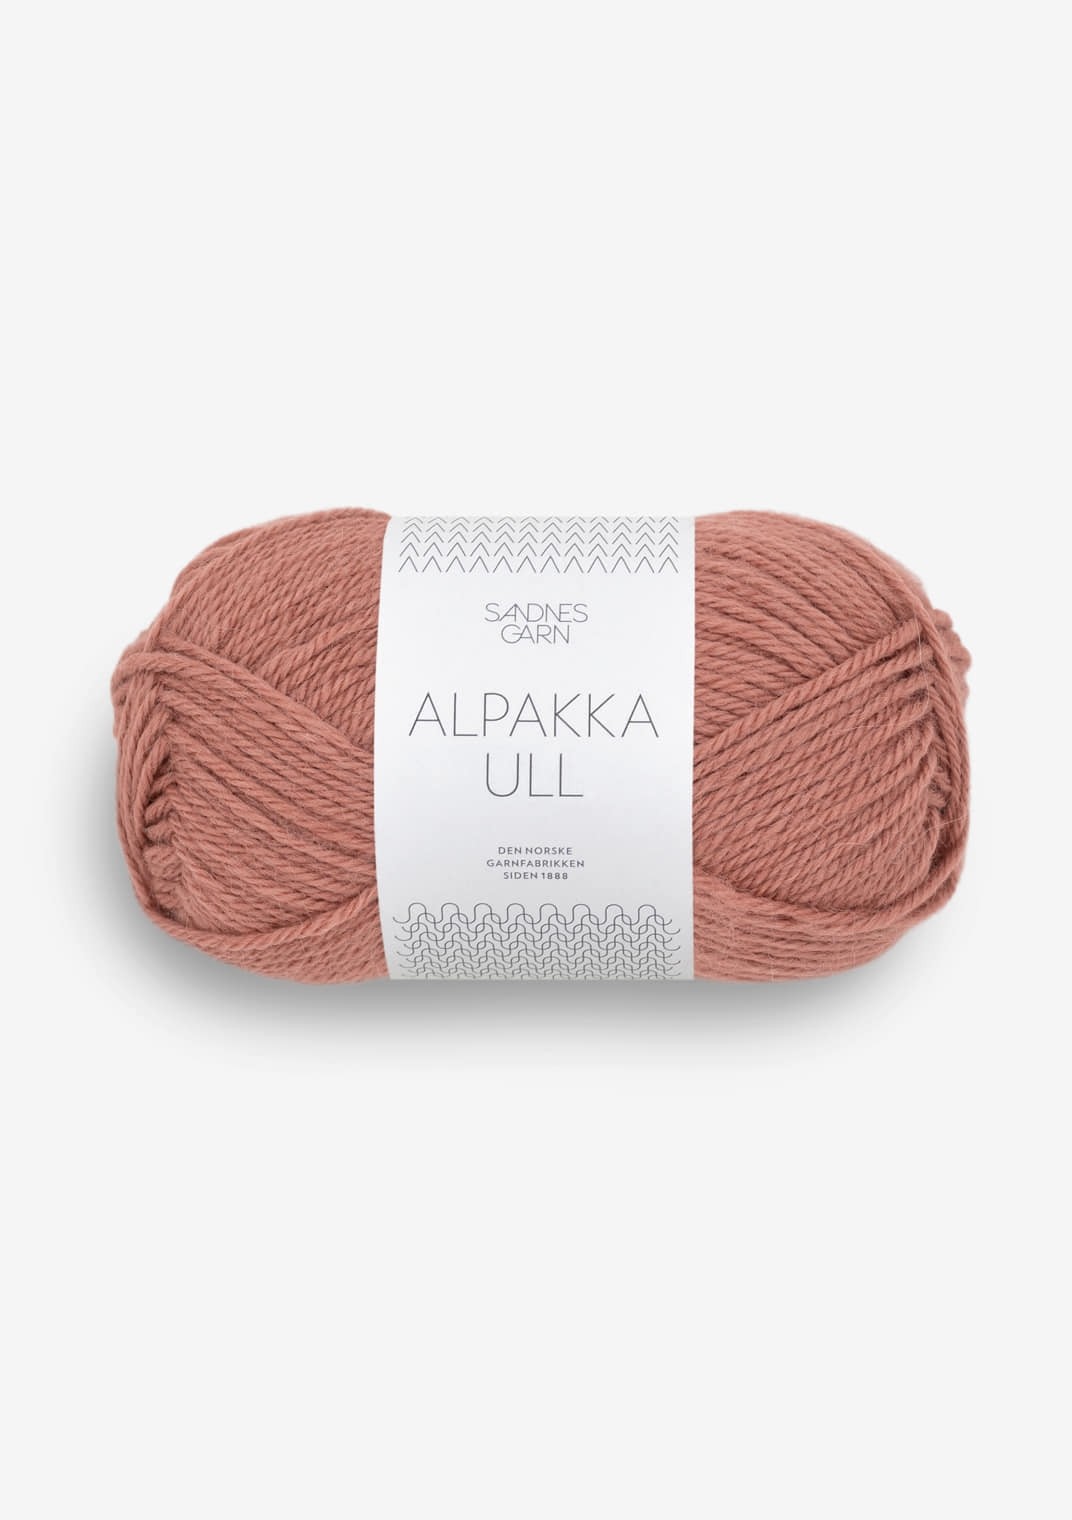 Alpakka Ull, 3553 Murrettu luumuroosa